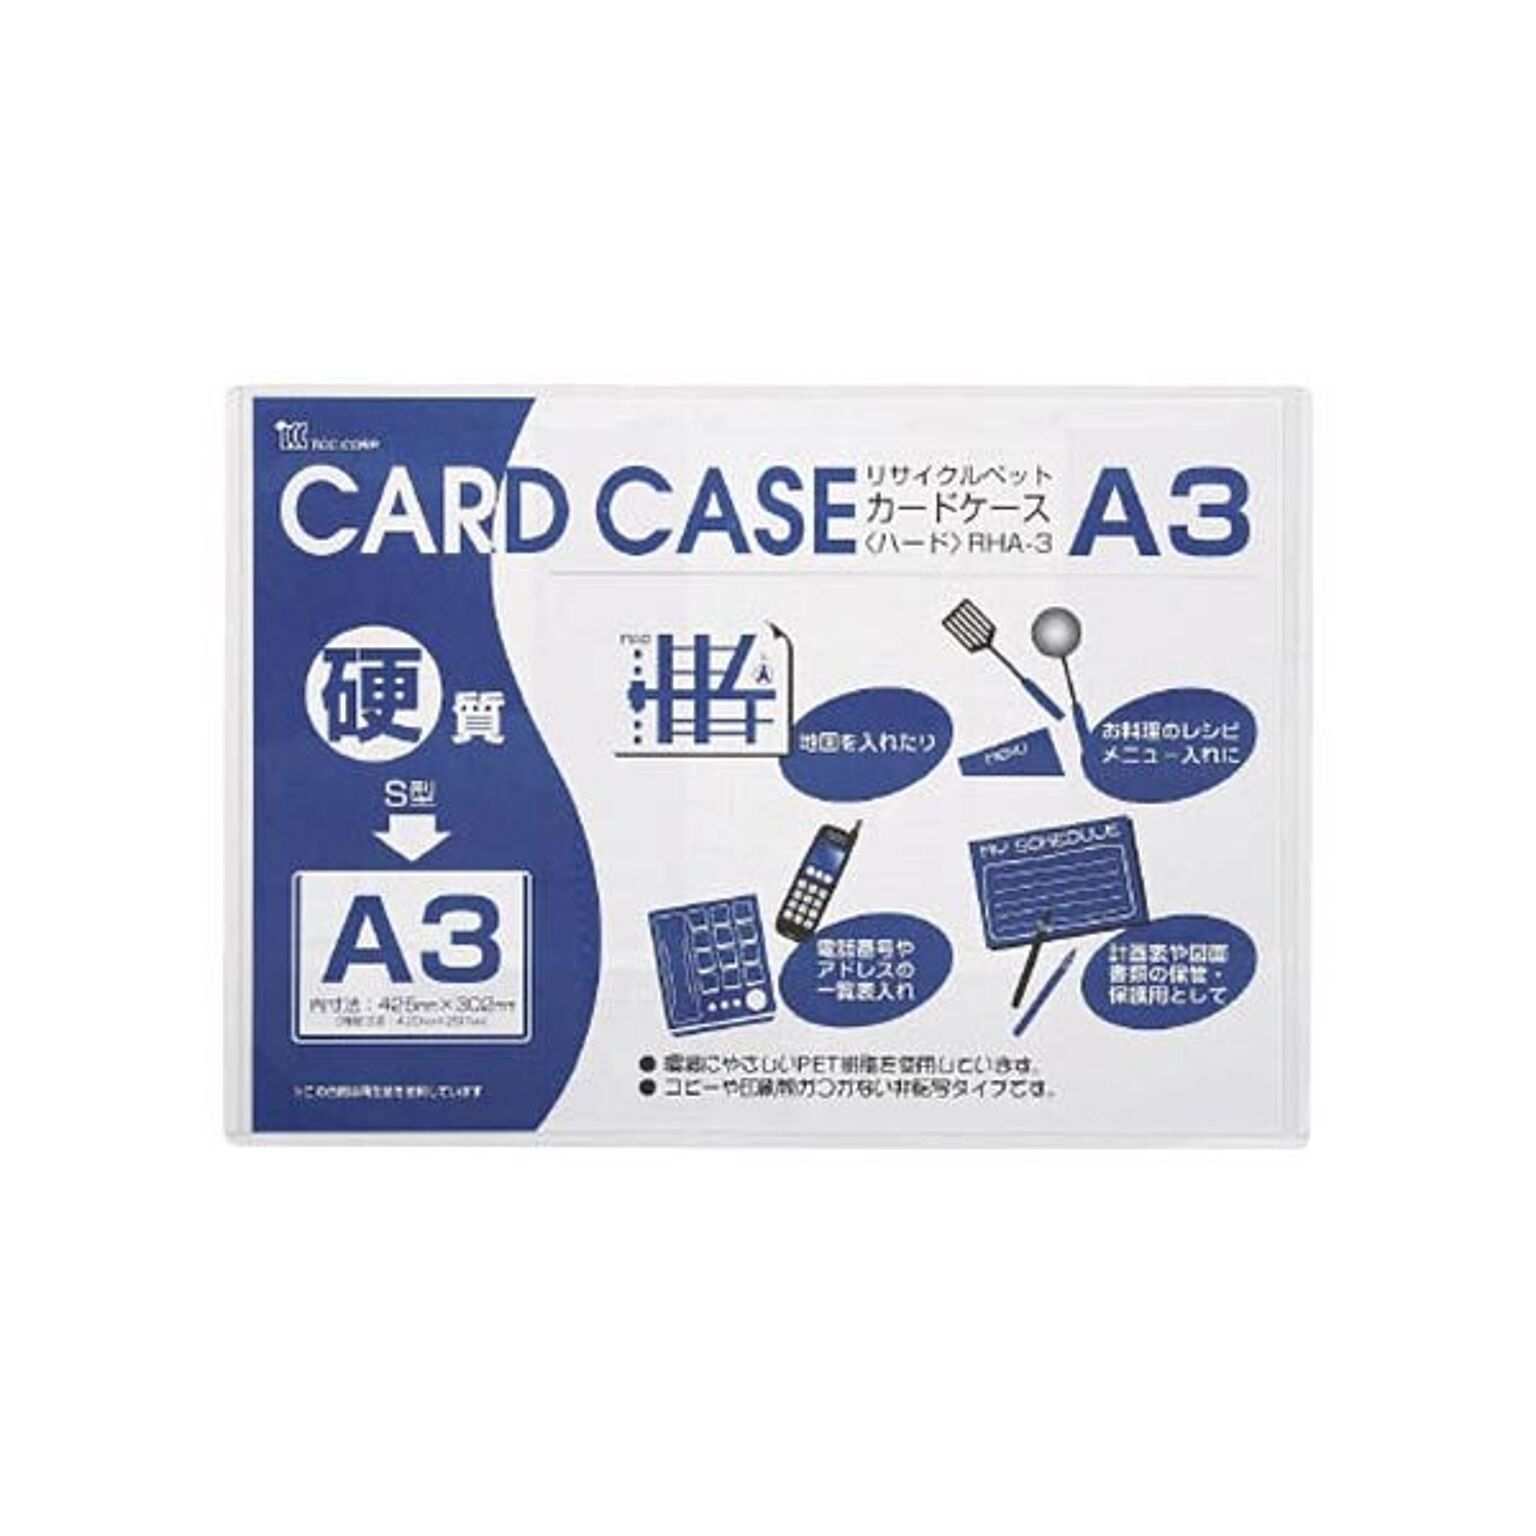 まとめ小野由 リサイクルカードケースOHA-3 1枚 ×10セット